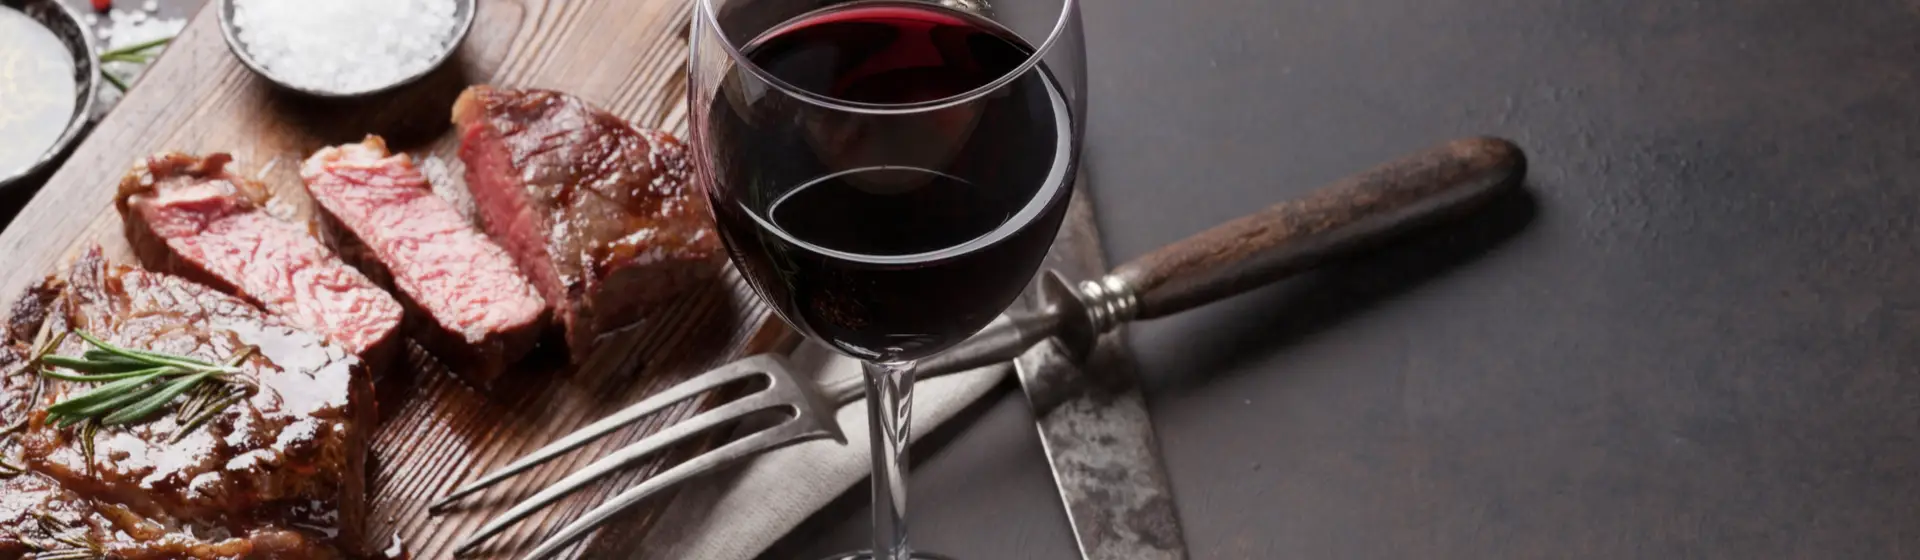  Detalhe de vinho tinto em uma taça ao lado de tábua com carne fatiada e talheres.